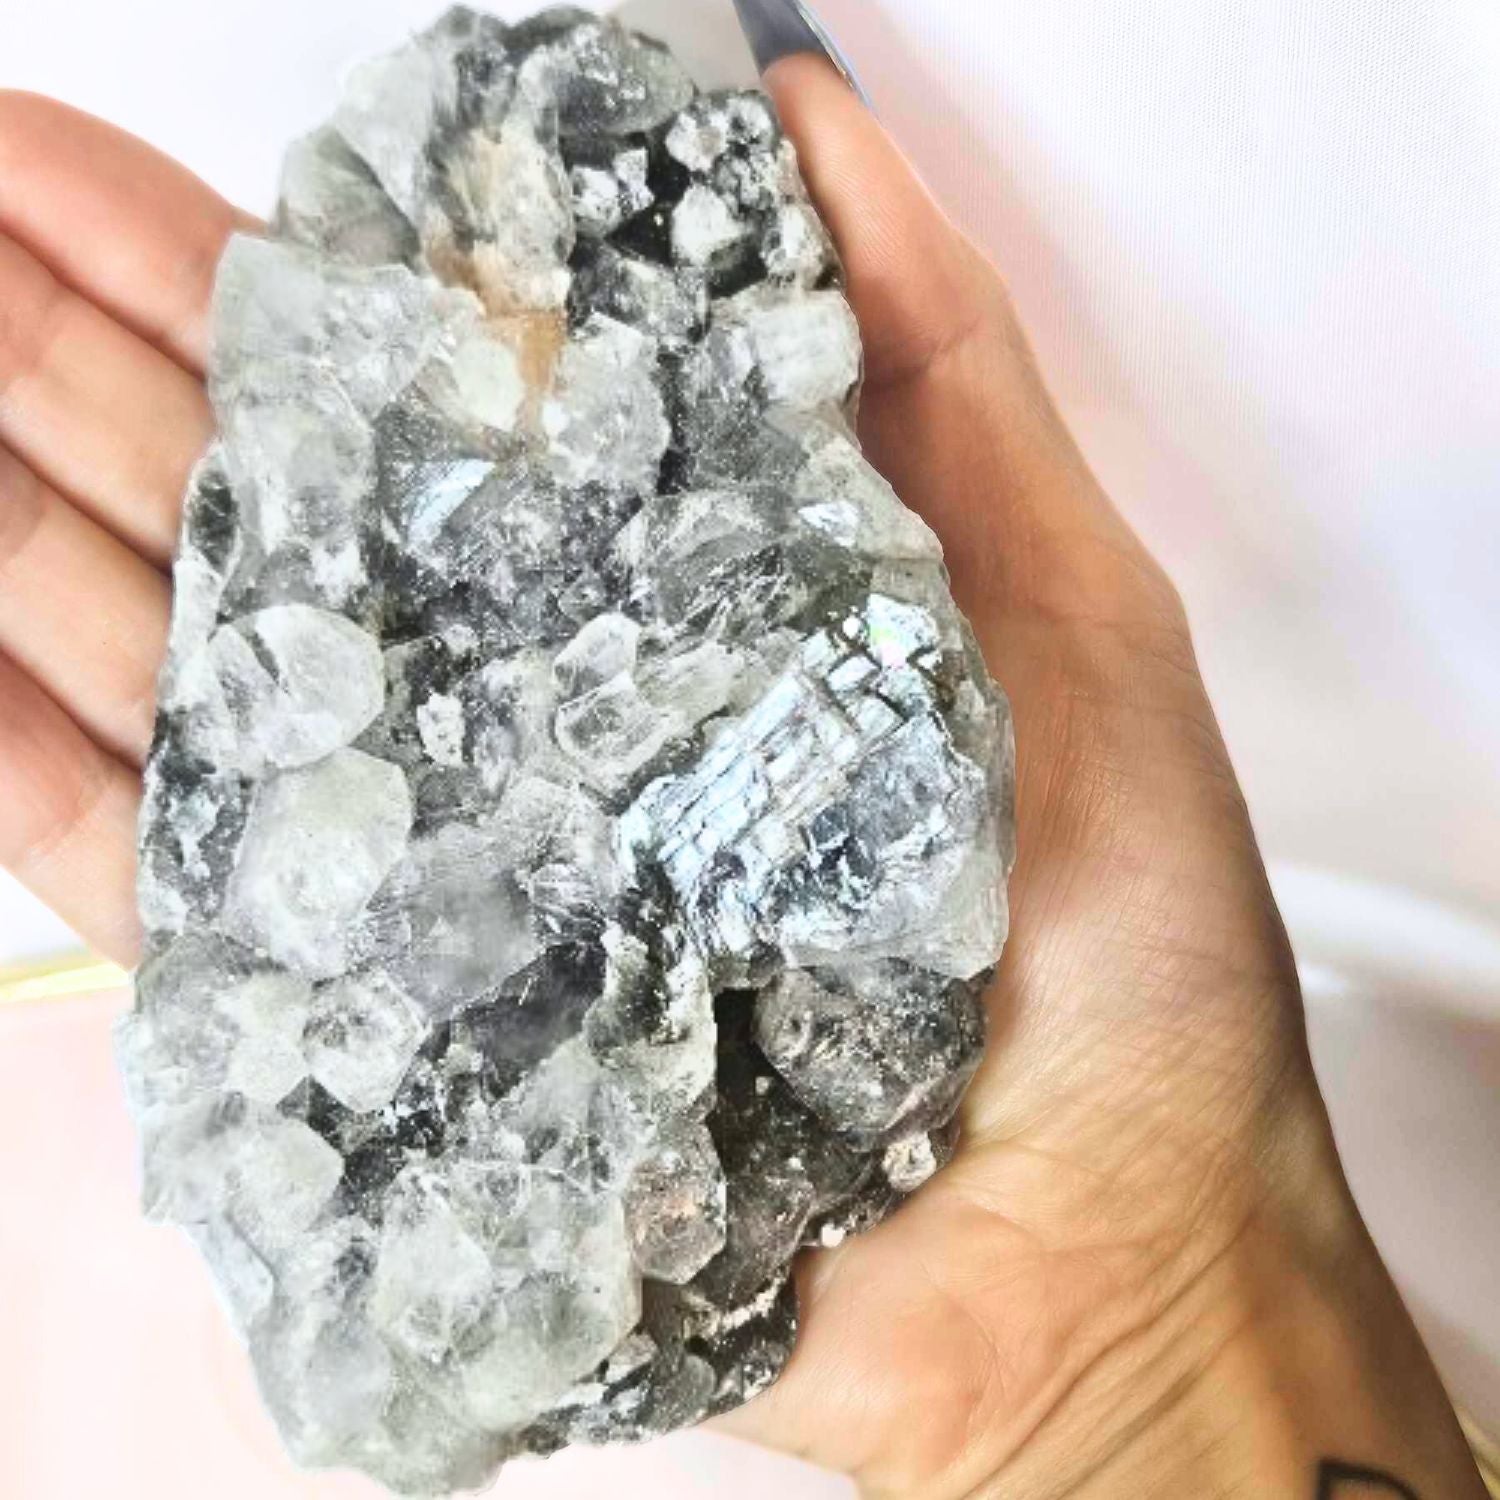 Amazing Stilbite, Apophyllite & Druzy Chalcedony Crystal Cluster - LargeApophyllite, Stilbite & Druzy Chalcedony Crystal Cluster - Large 341g 